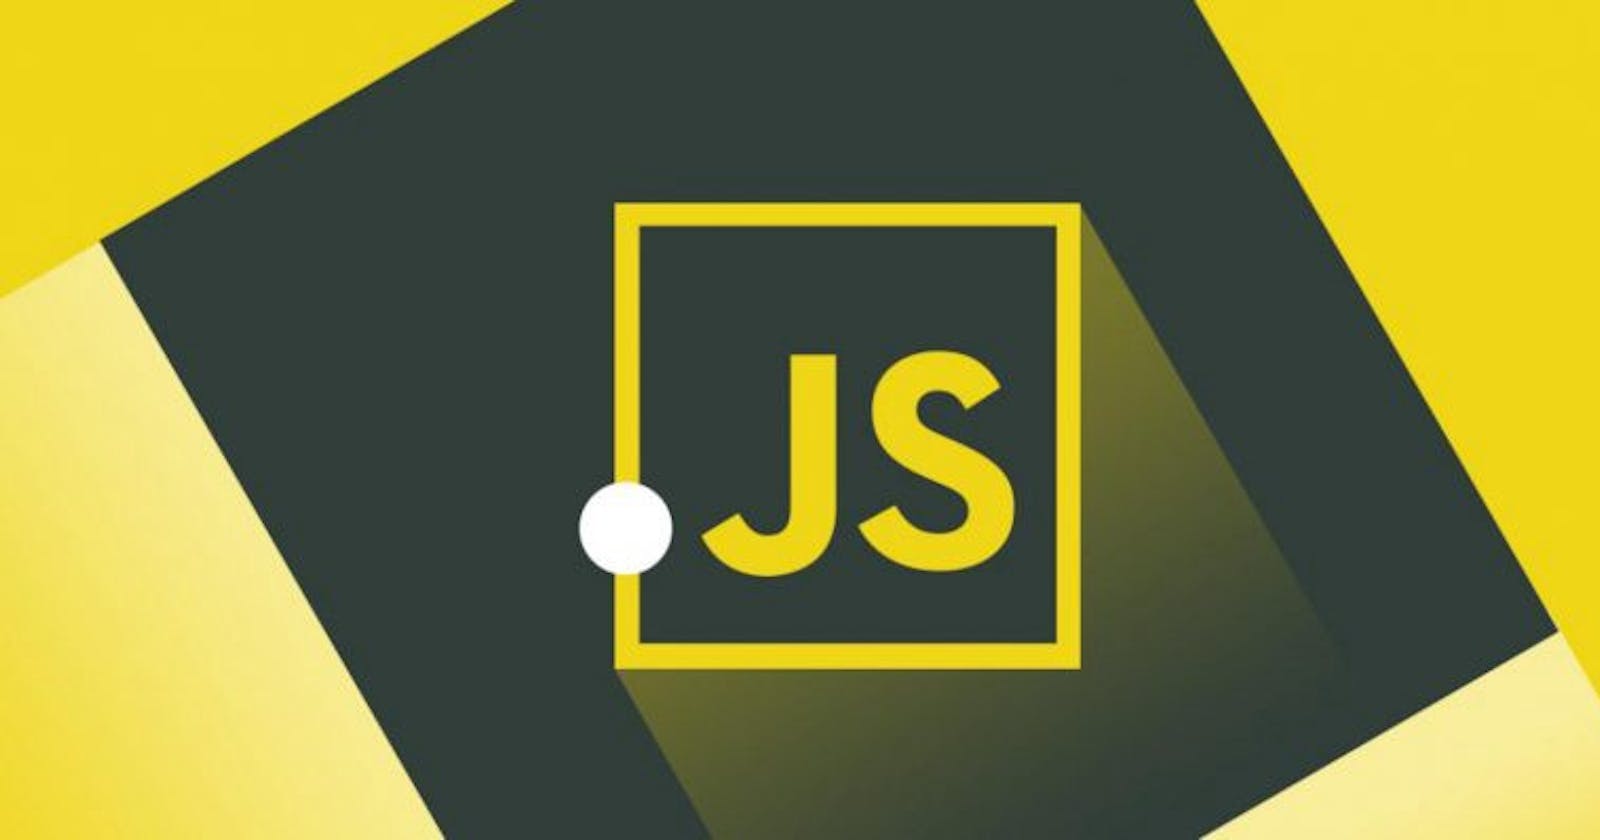 History of JS & Fundaments of JS